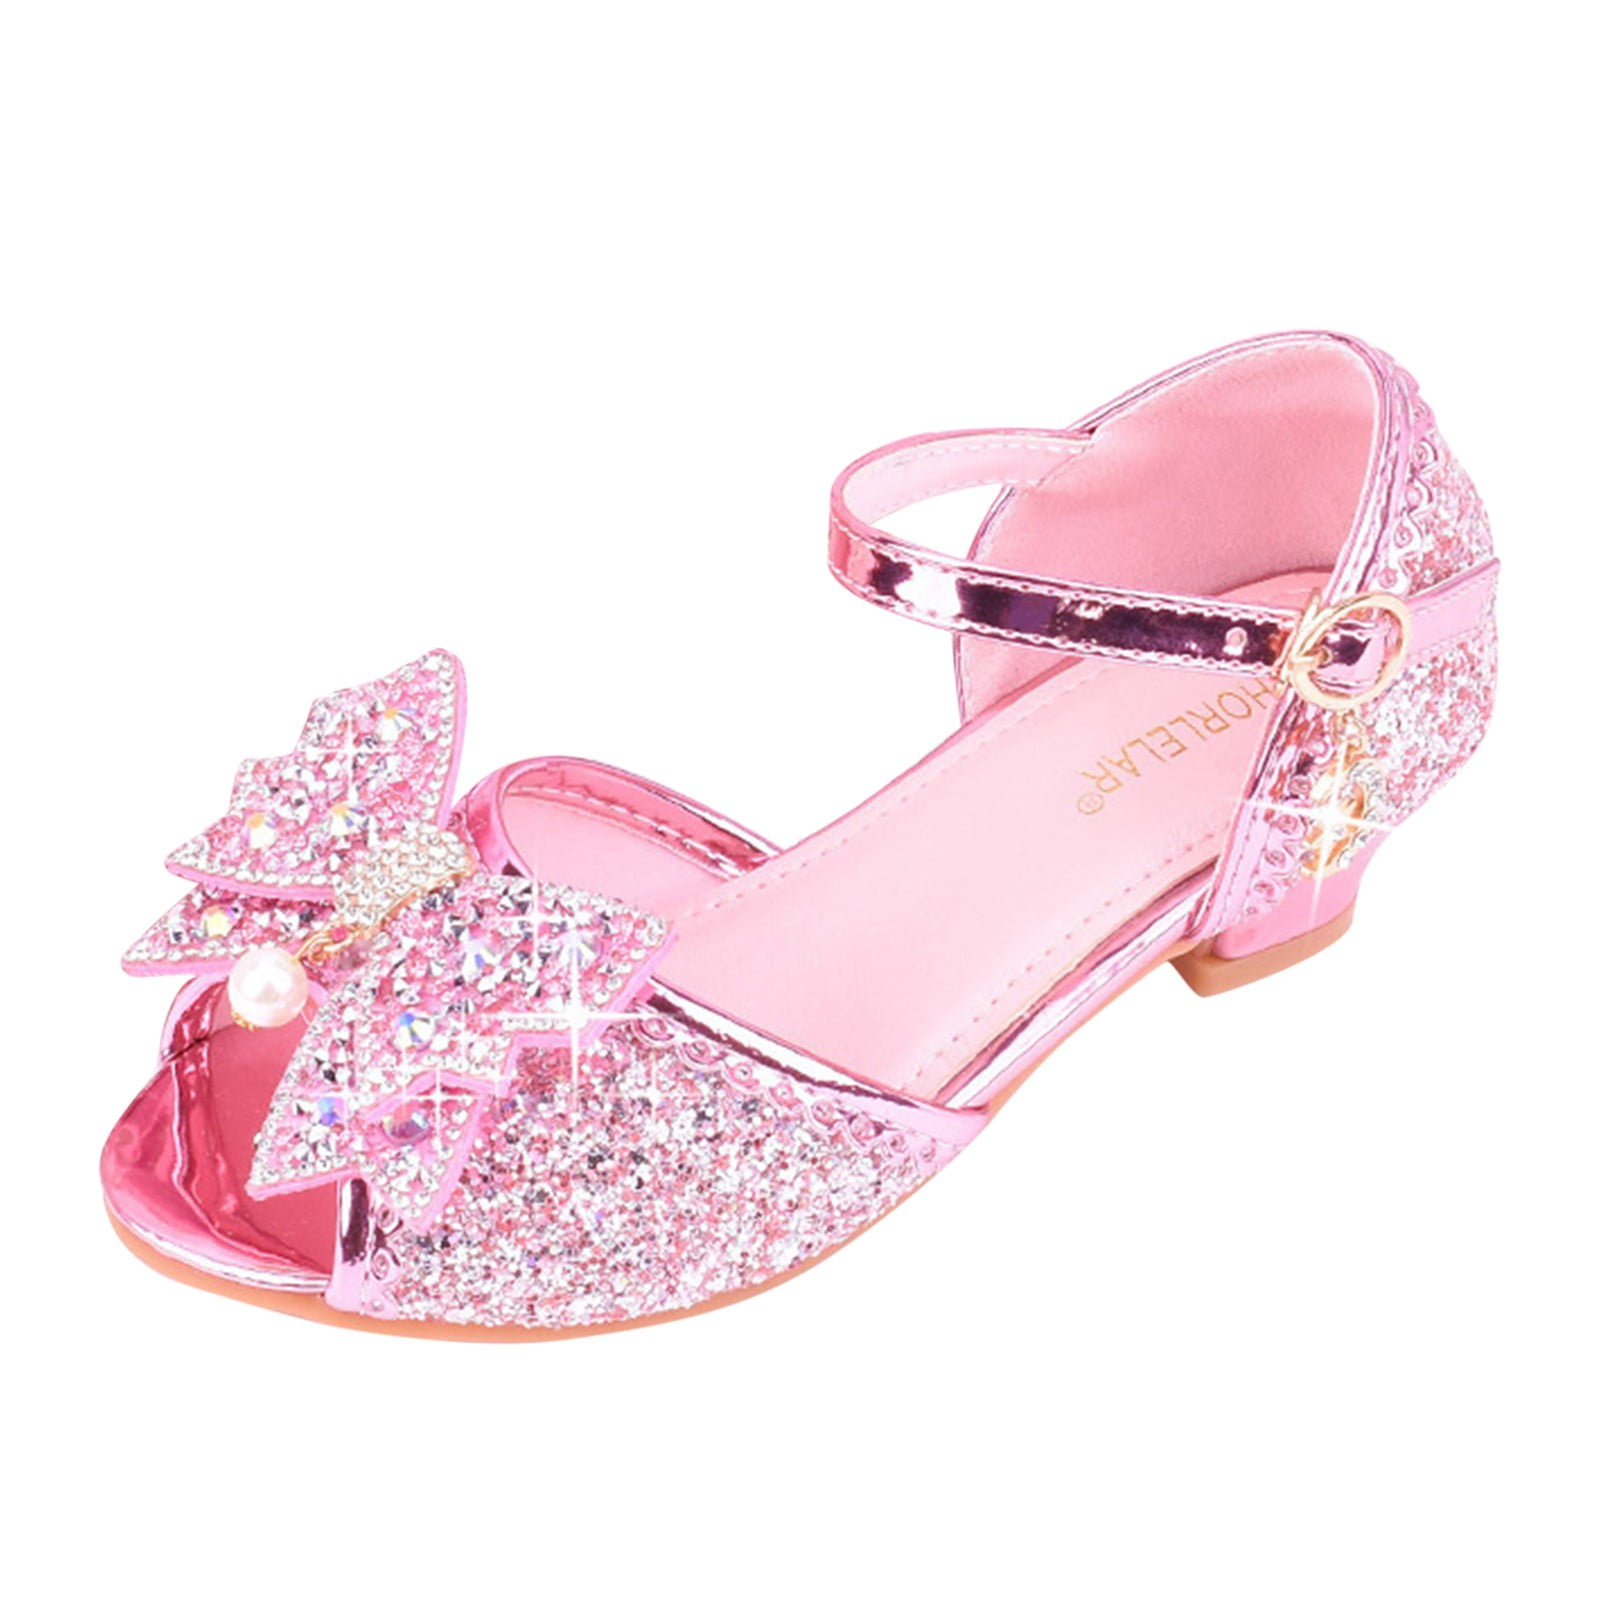 L.O.L. SURPRISE! Unicorn Glitter Sneakers | Little Girls Shoes – Mia Belle  Girls